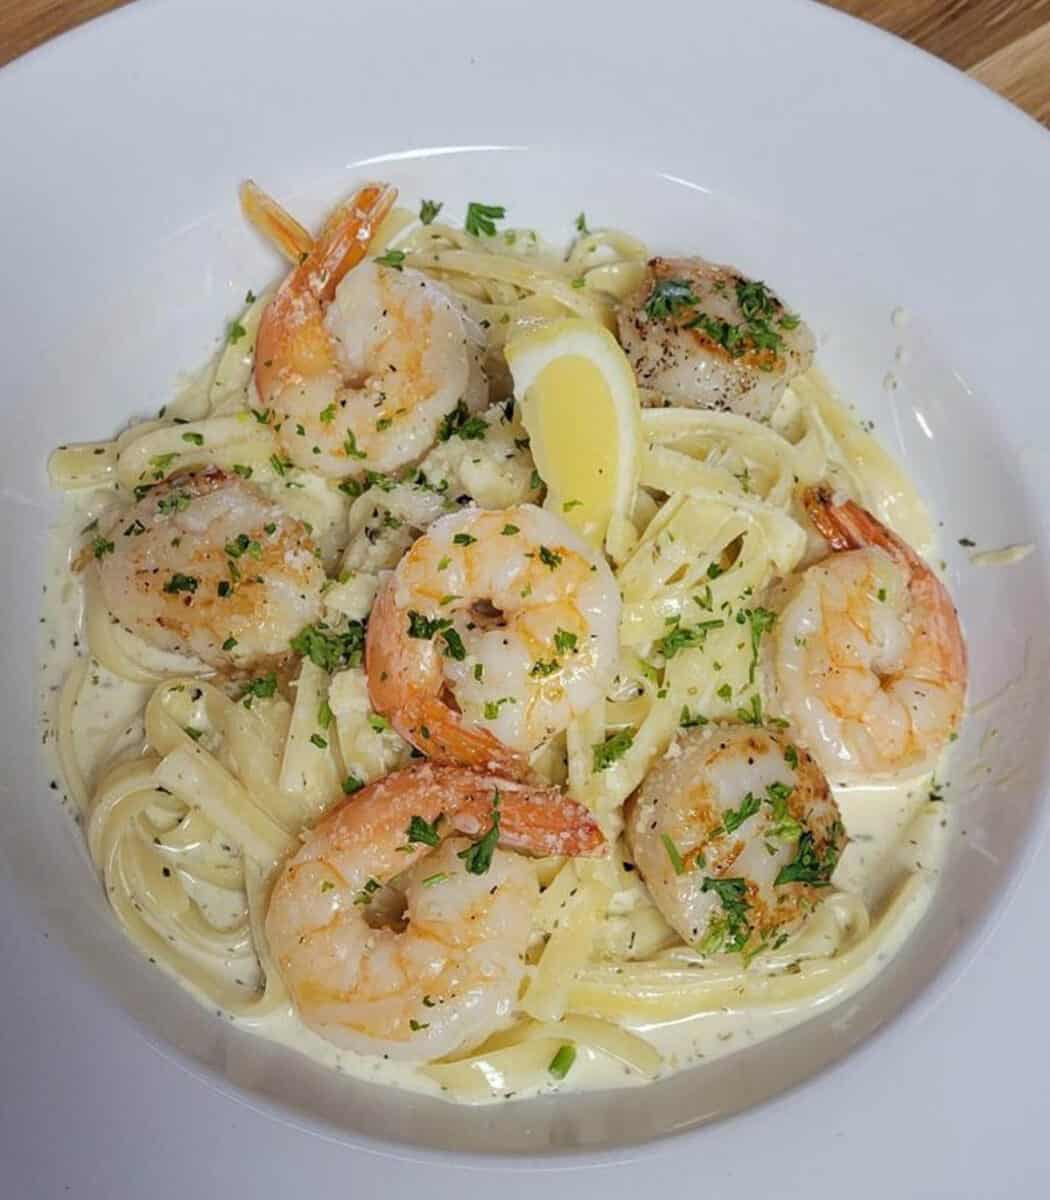 Shrimp and pasta from Pasquales Italian Ristorante